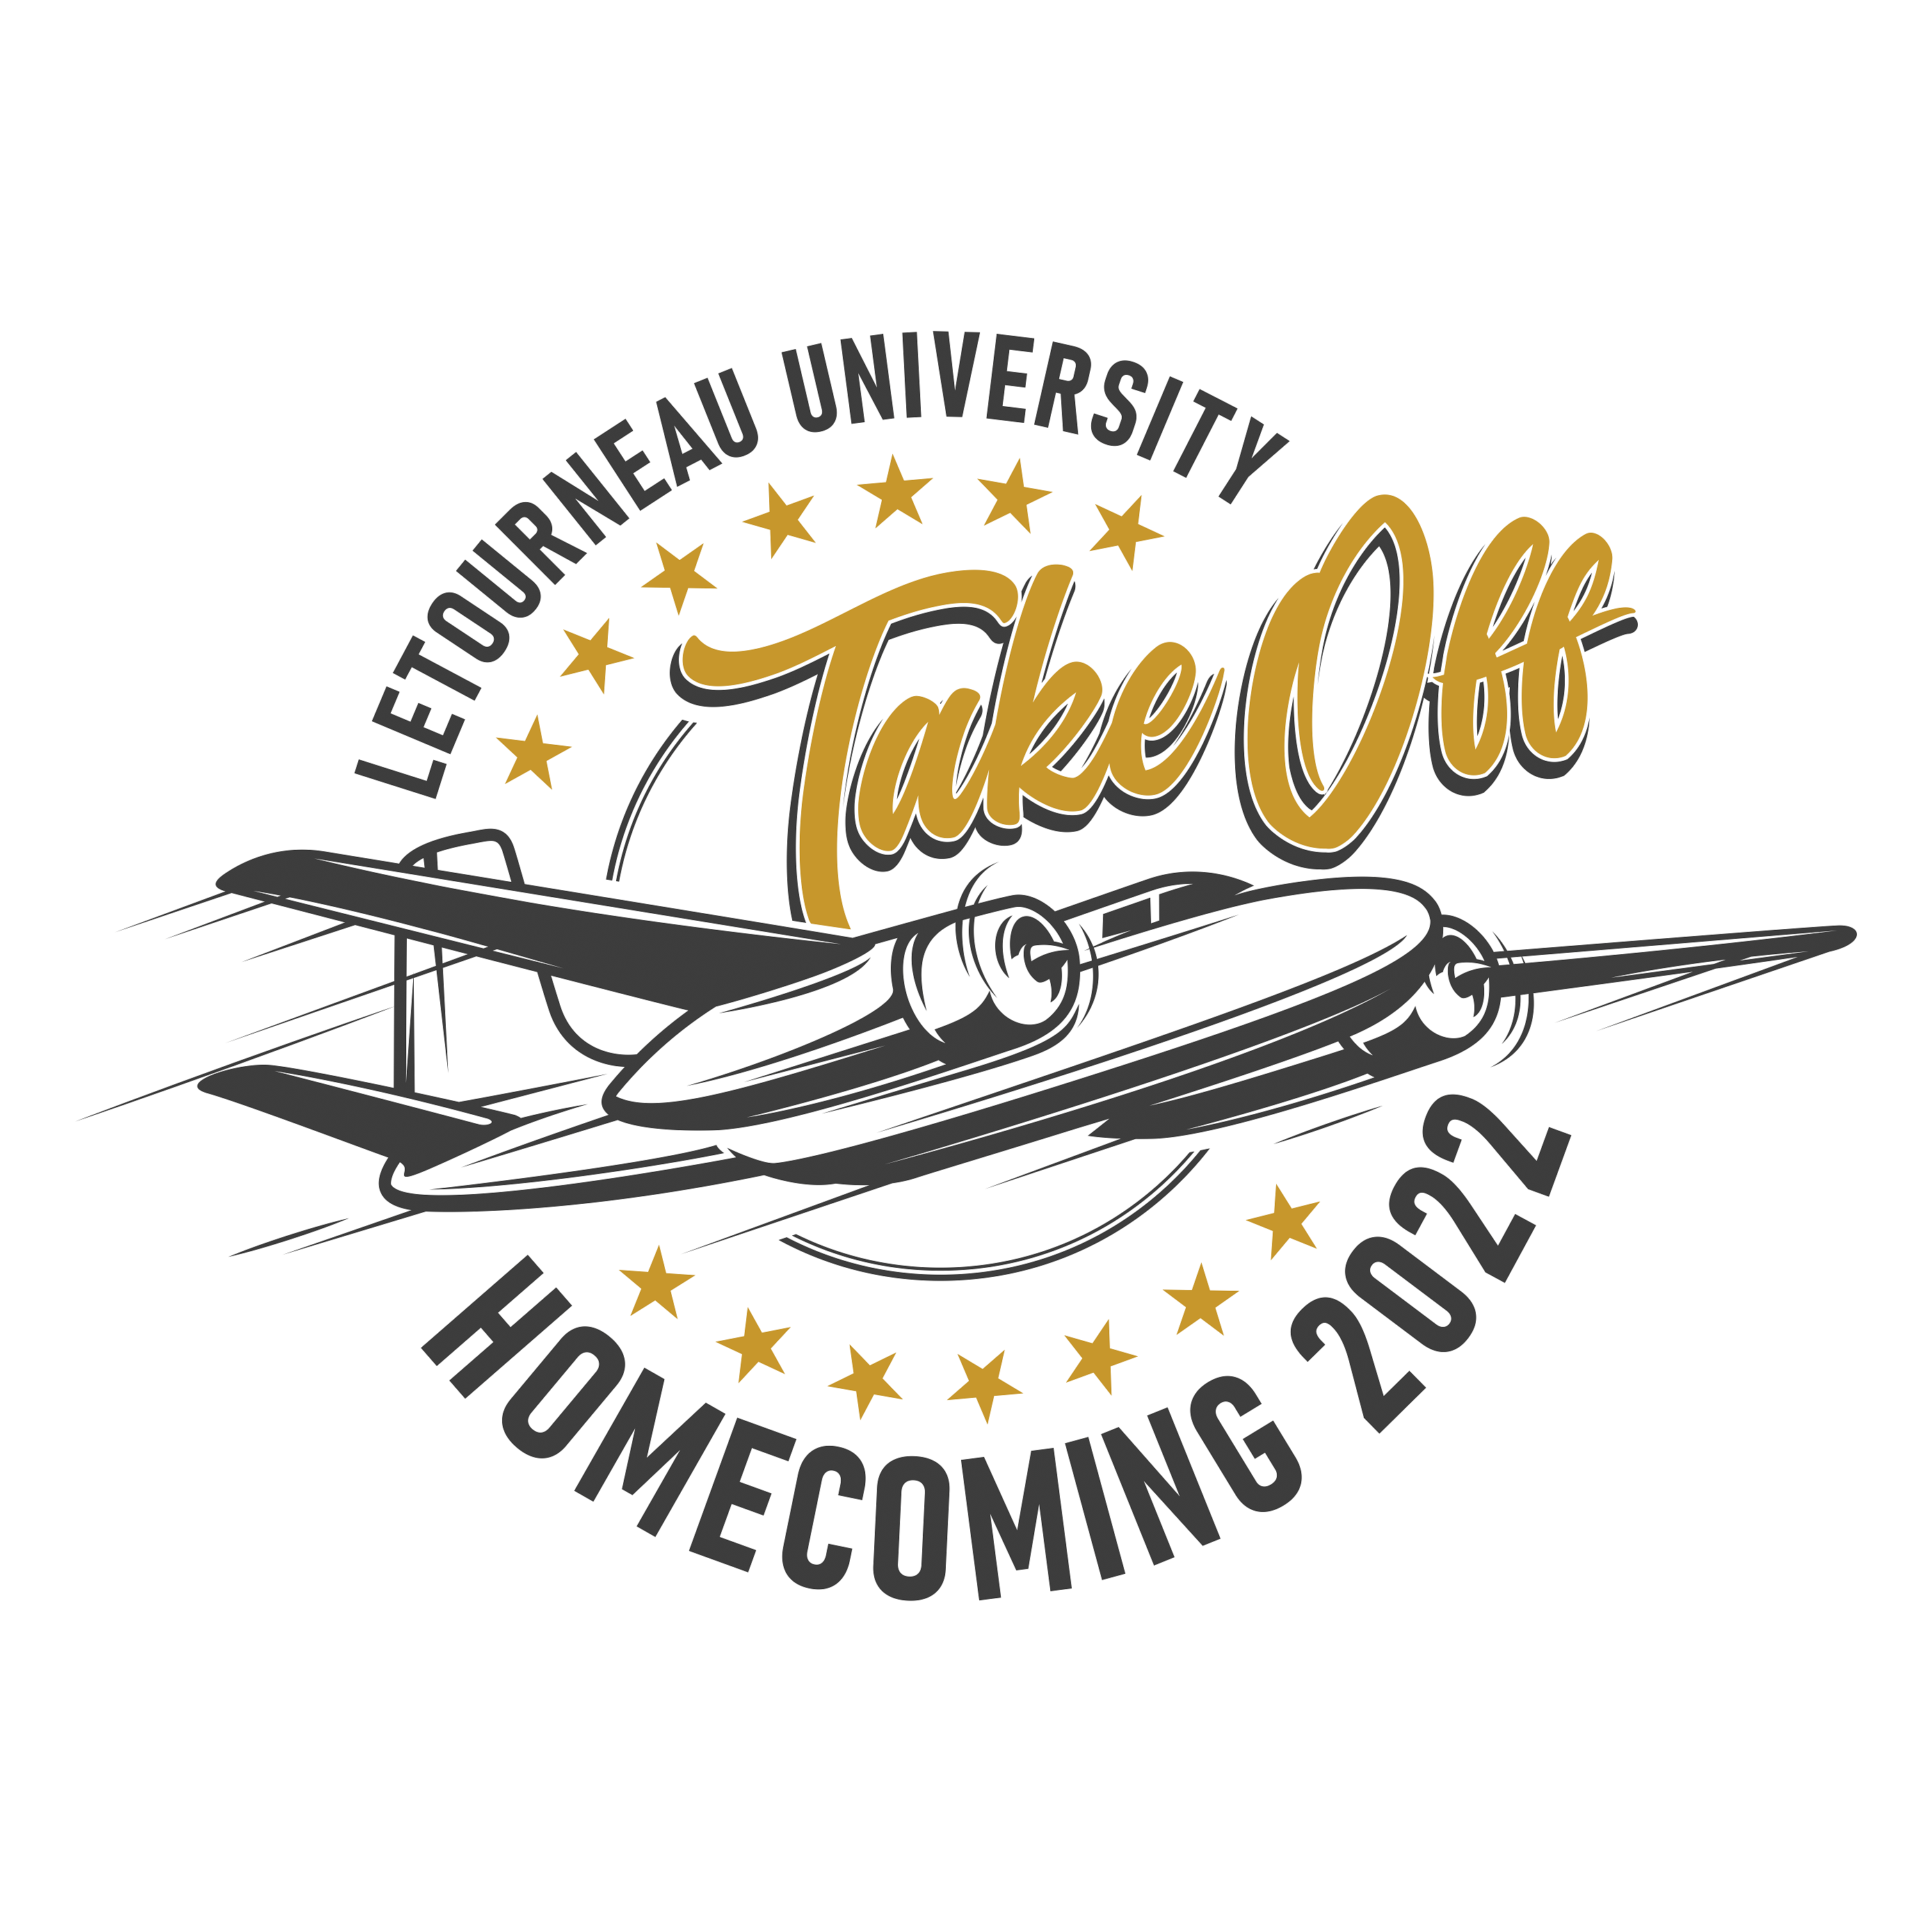 Homecoming 2022 Logo: Take Off!